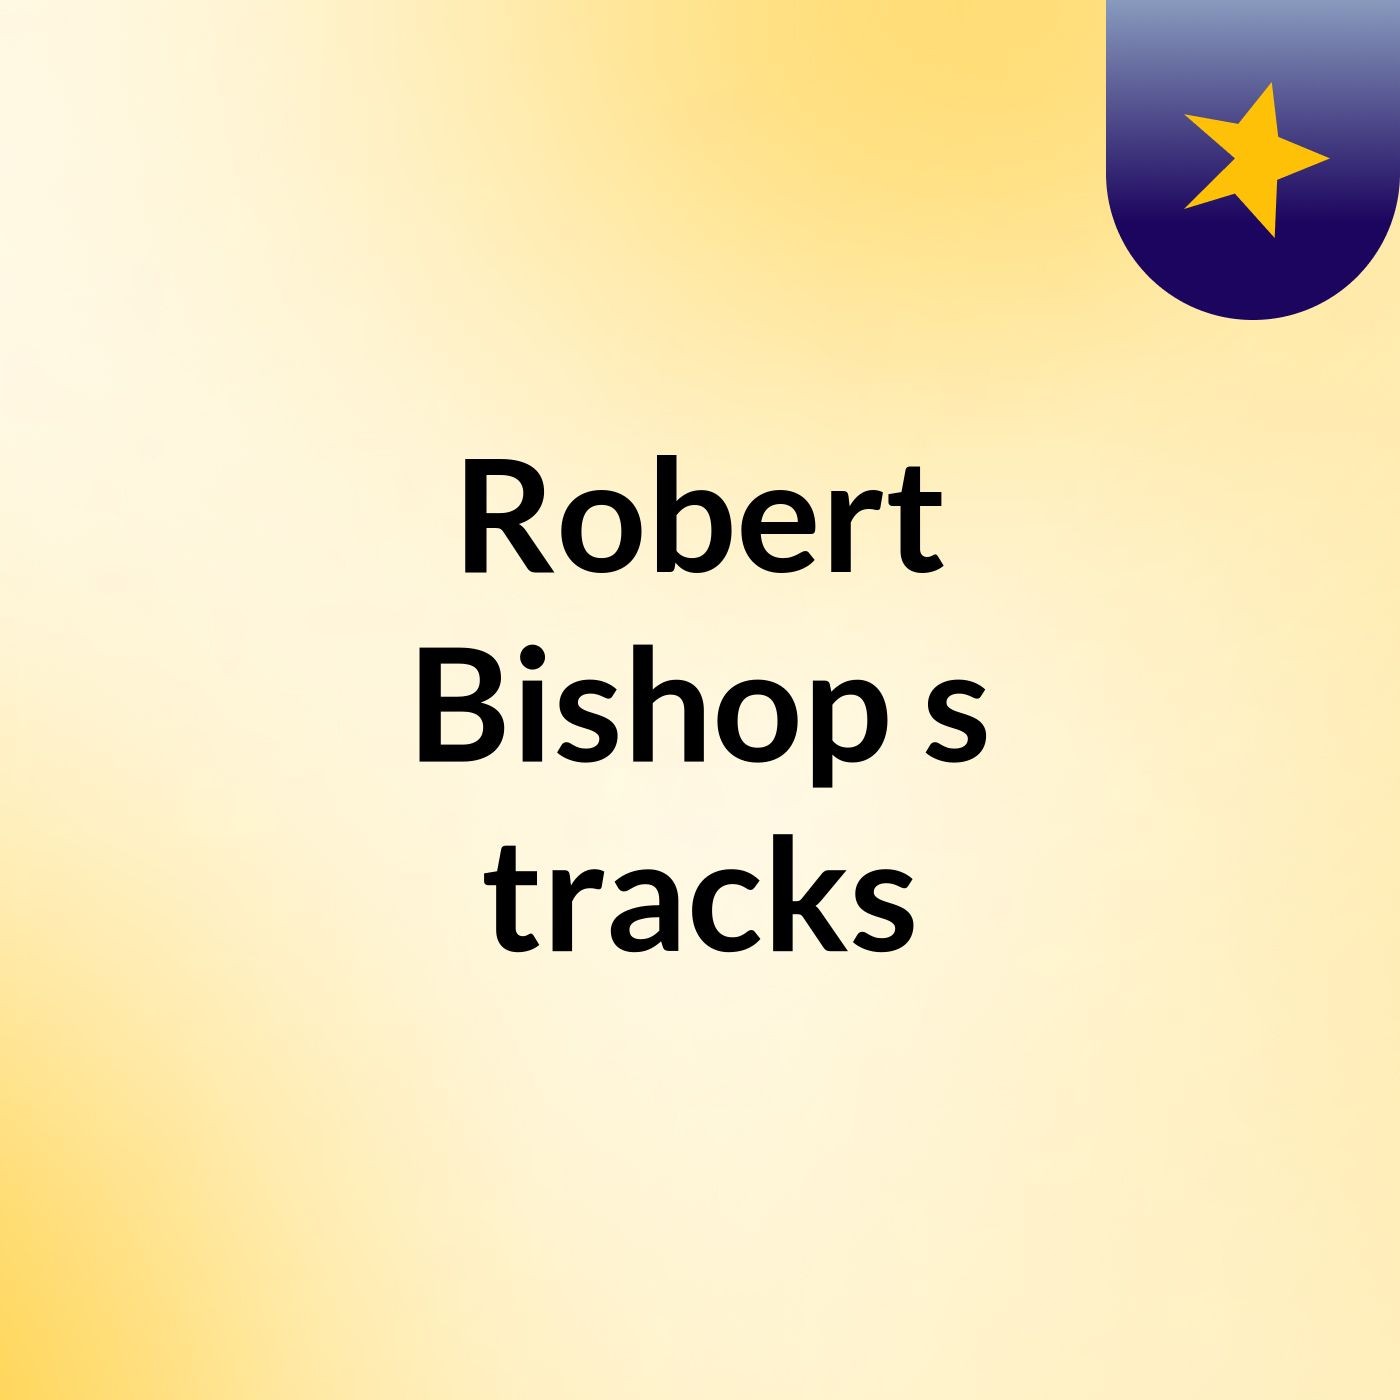 Robert Bishop's tracks